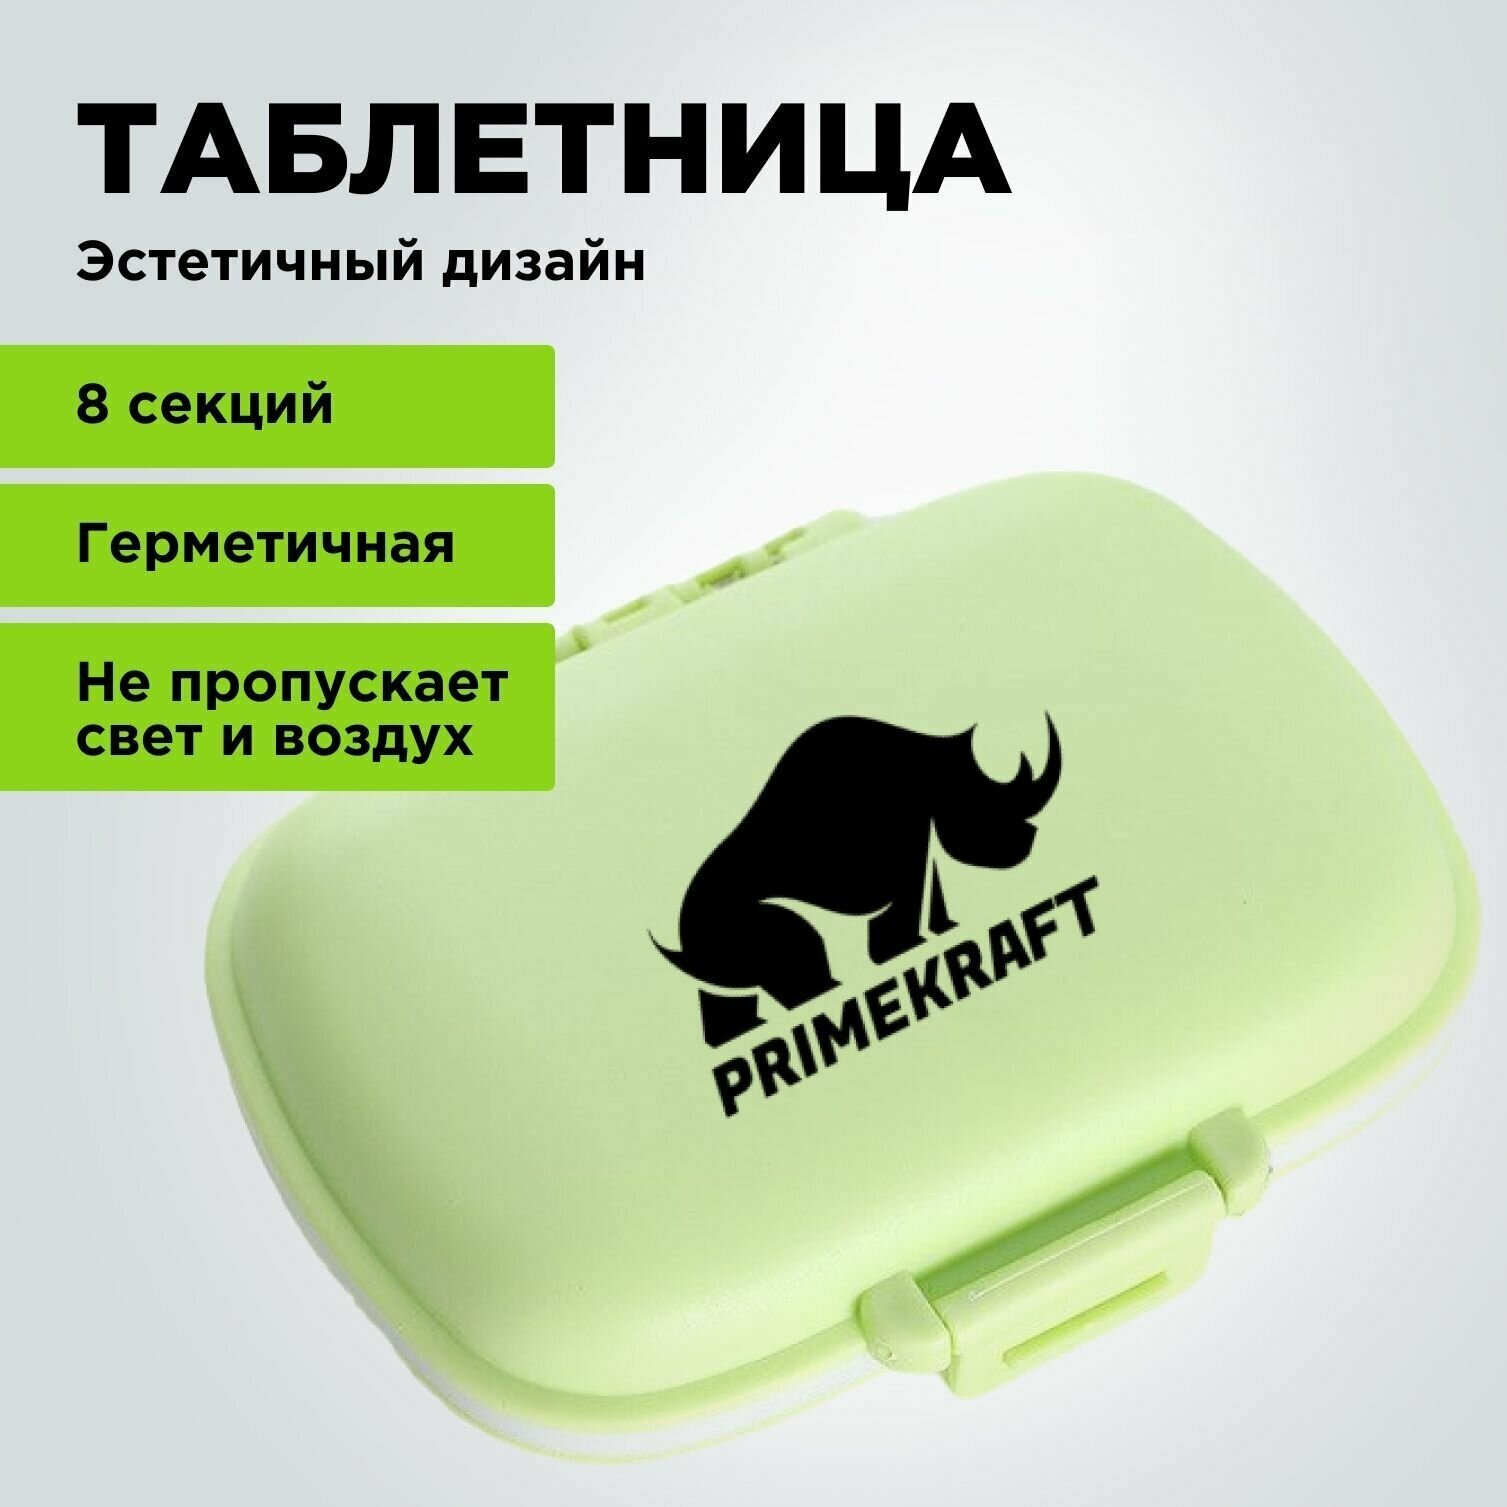 Таблетница органайзер PRIMEKRAFT / Контейнер для хранения таблеток зеленый / 8 секций